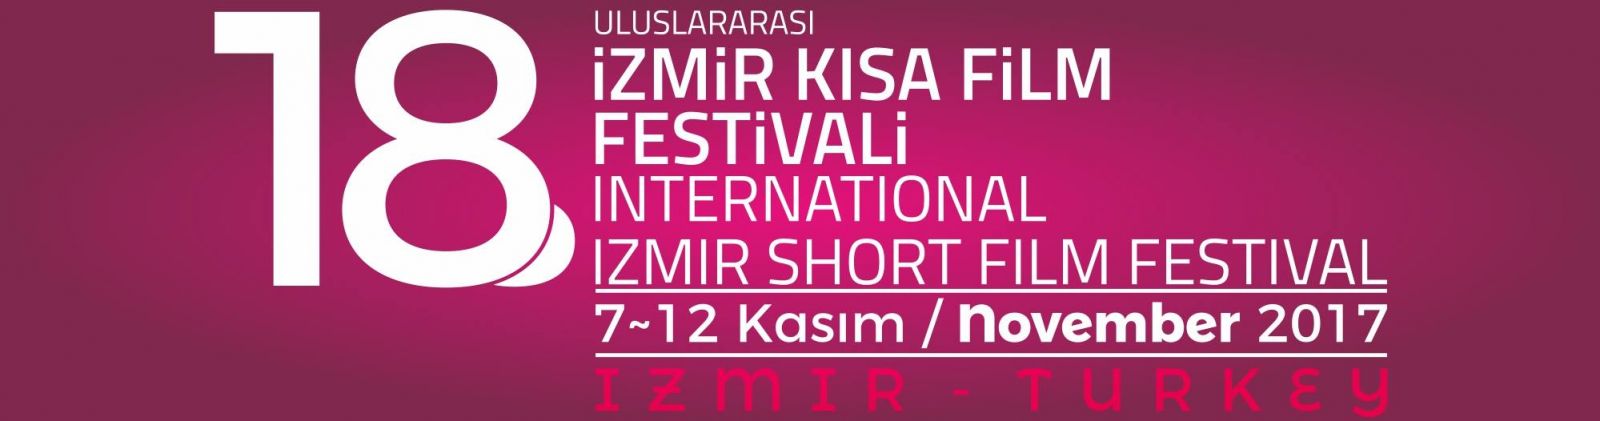 izmir kısa film festivali 2017 ile ilgili görsel sonucu